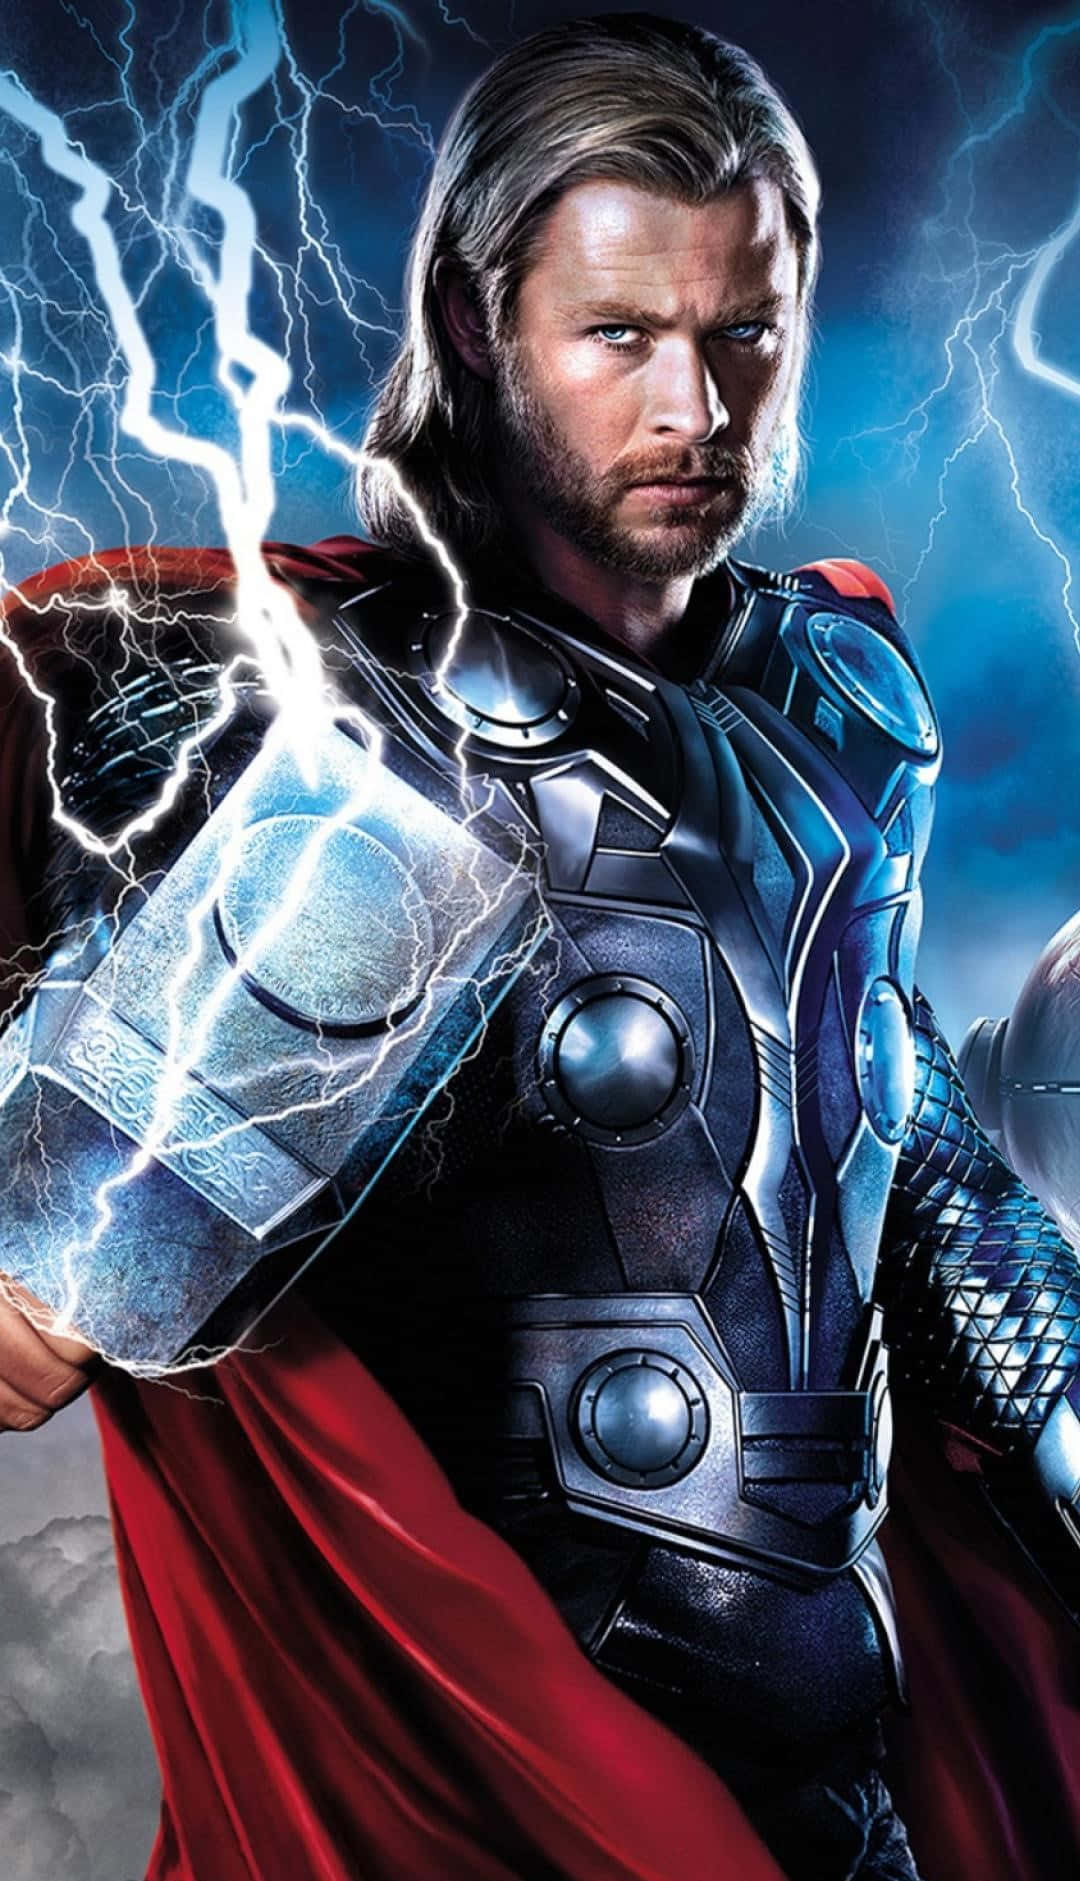 Thor,med Sin Mäktiga Hammare, Mjolnir.